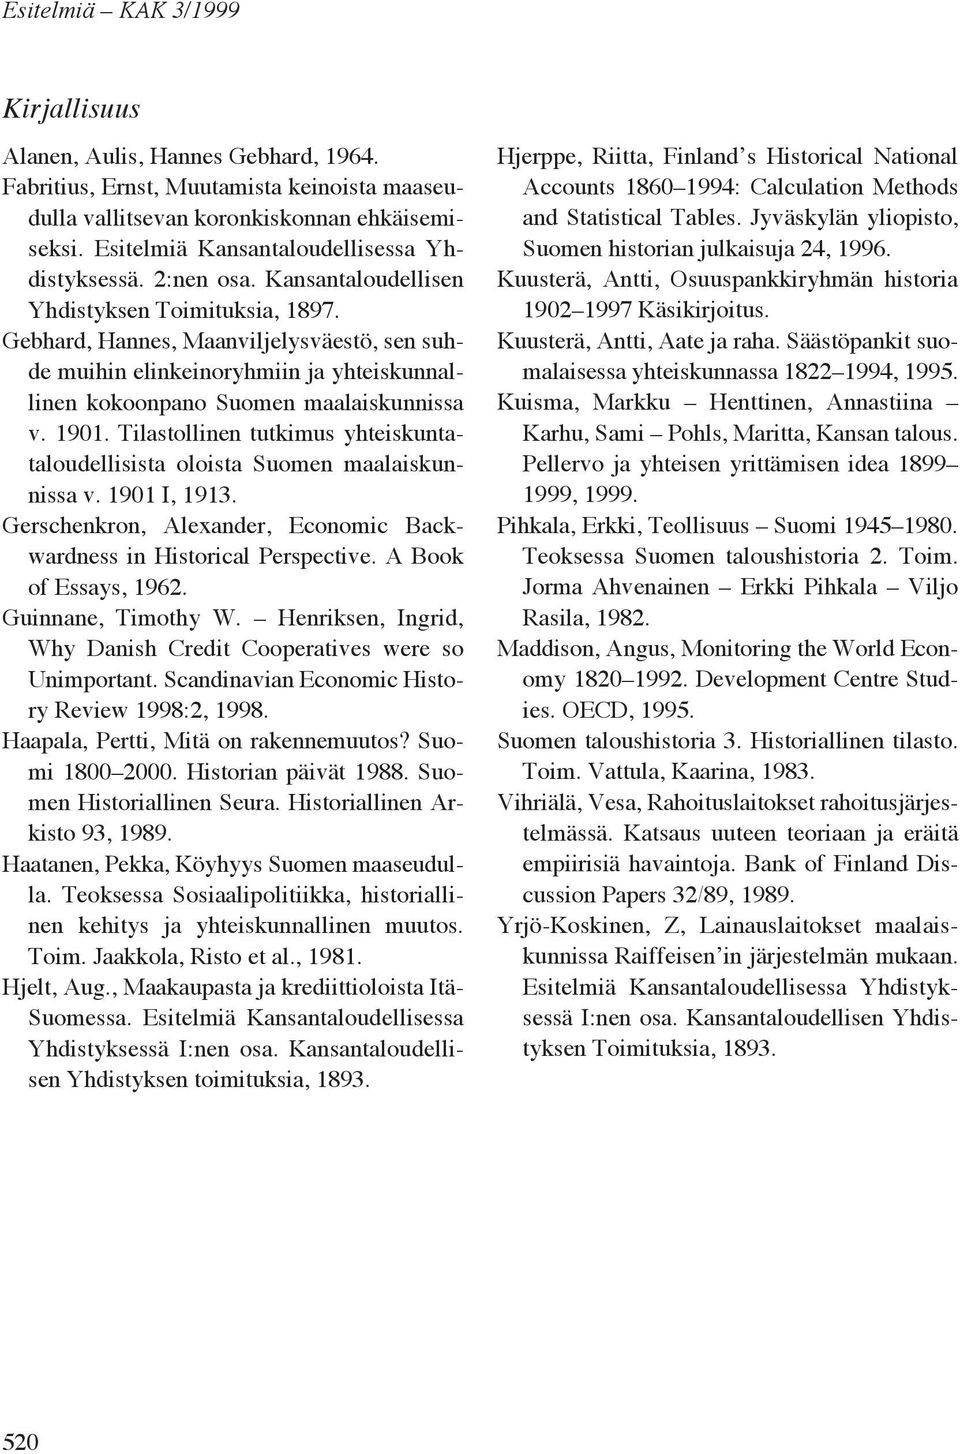 Gebhard, Hannes, Maanviljelysväestö, sen suhde muihin elinkeinoryhmiin ja yhteiskunnallinen kokoonpano Suomen maalaiskunnissa v. 1901.